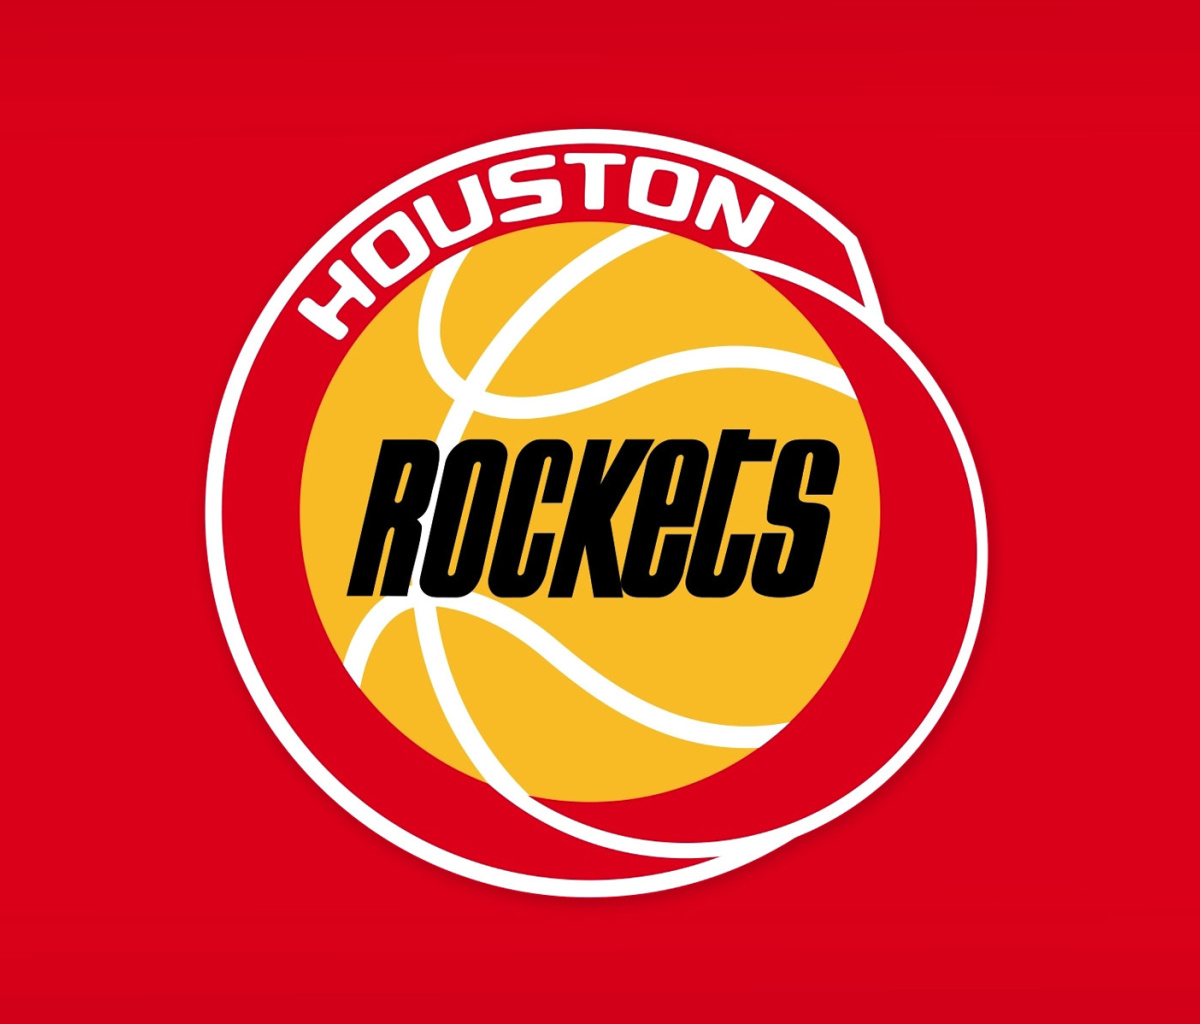 Das Houston Rockets Logo Wallpaper 1200x1024